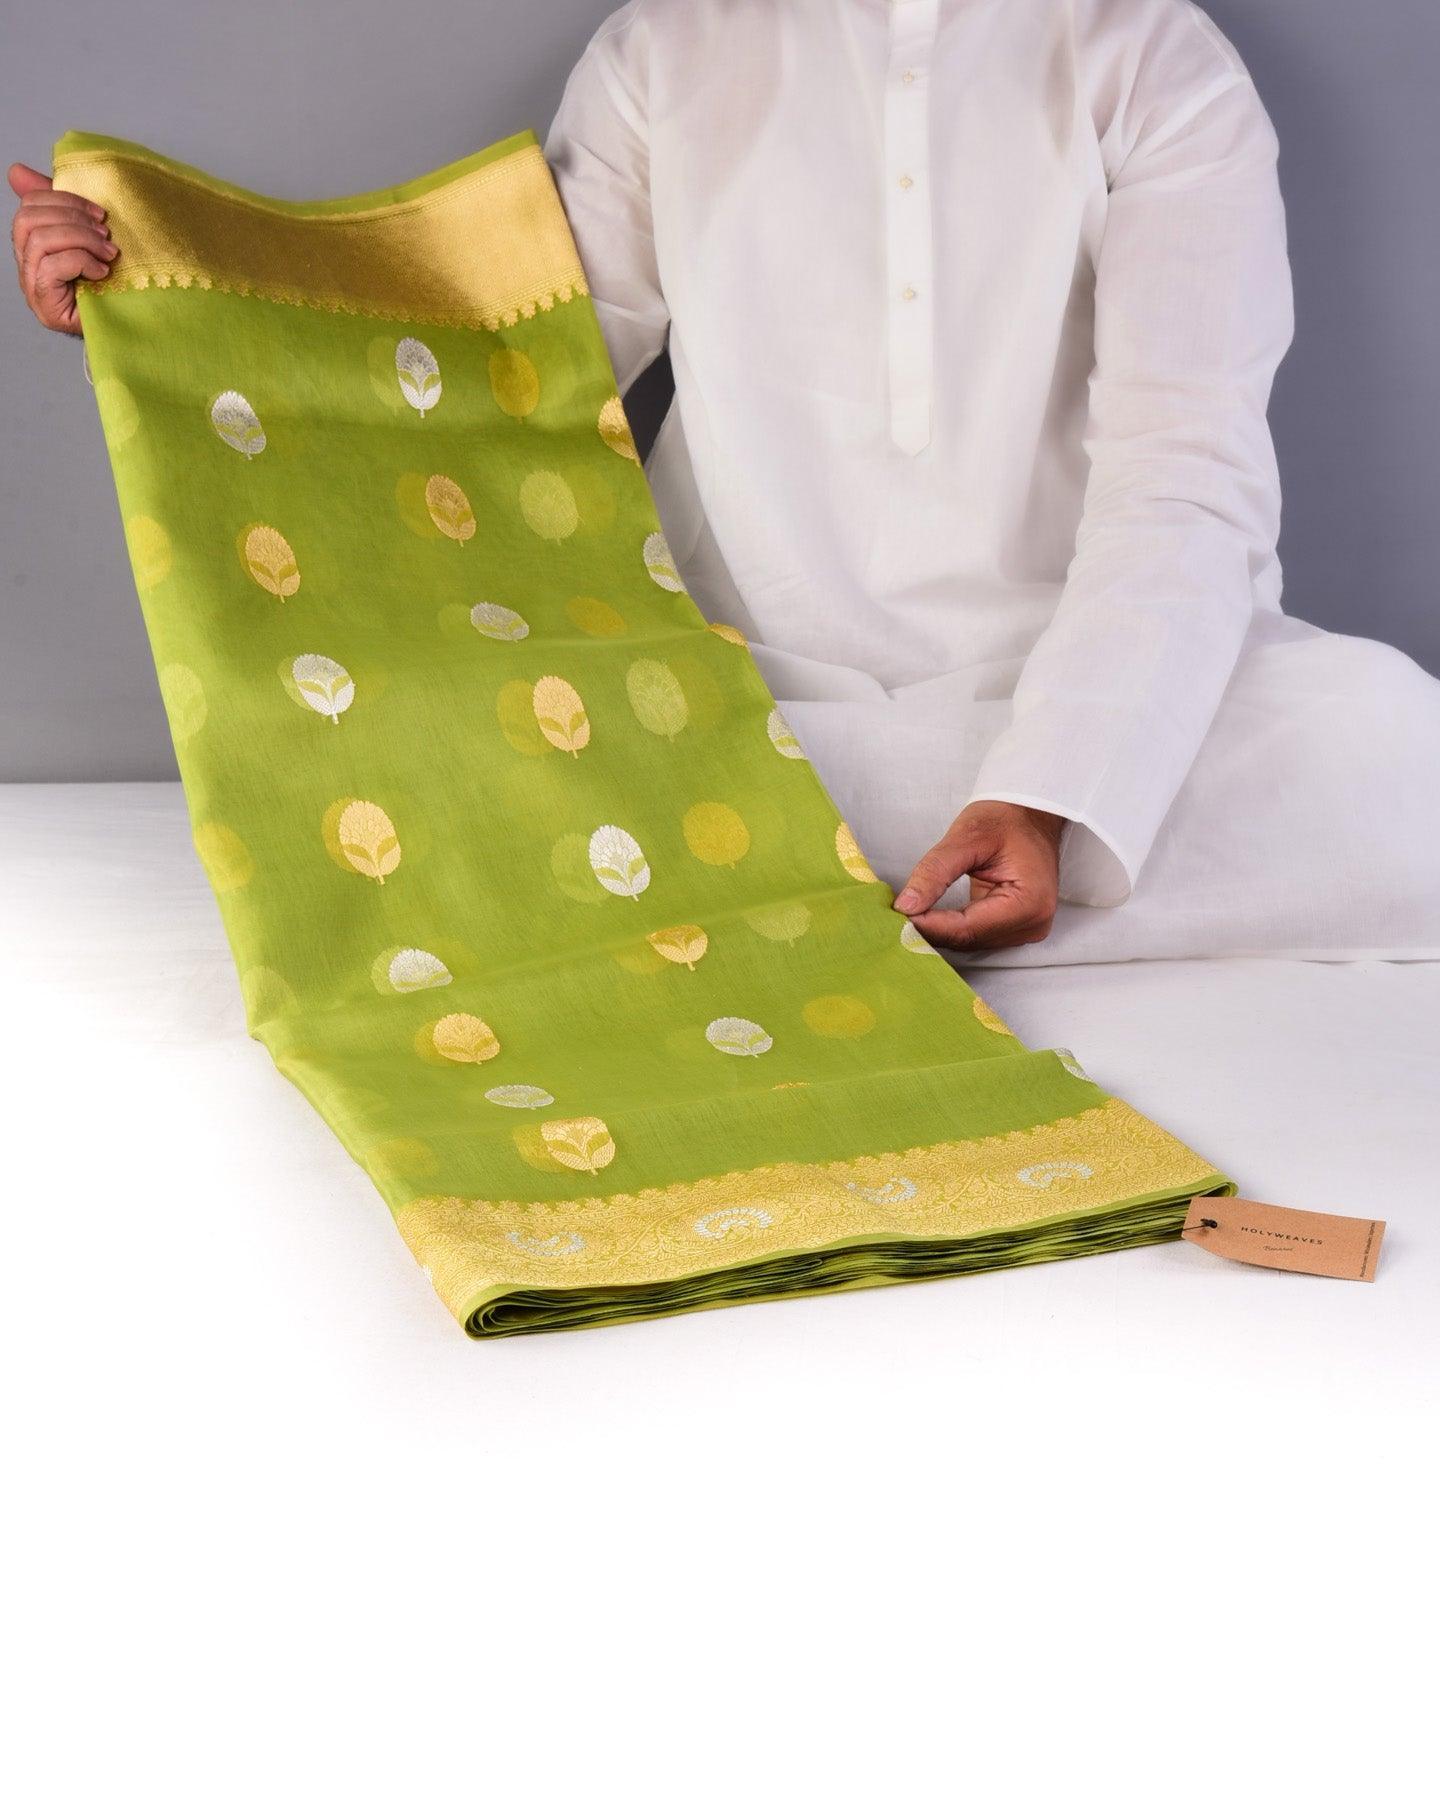 Moss Green Banarasi Kadhuan Brocade Handwoven Kora Silk Saree - By HolyWeaves, Benares